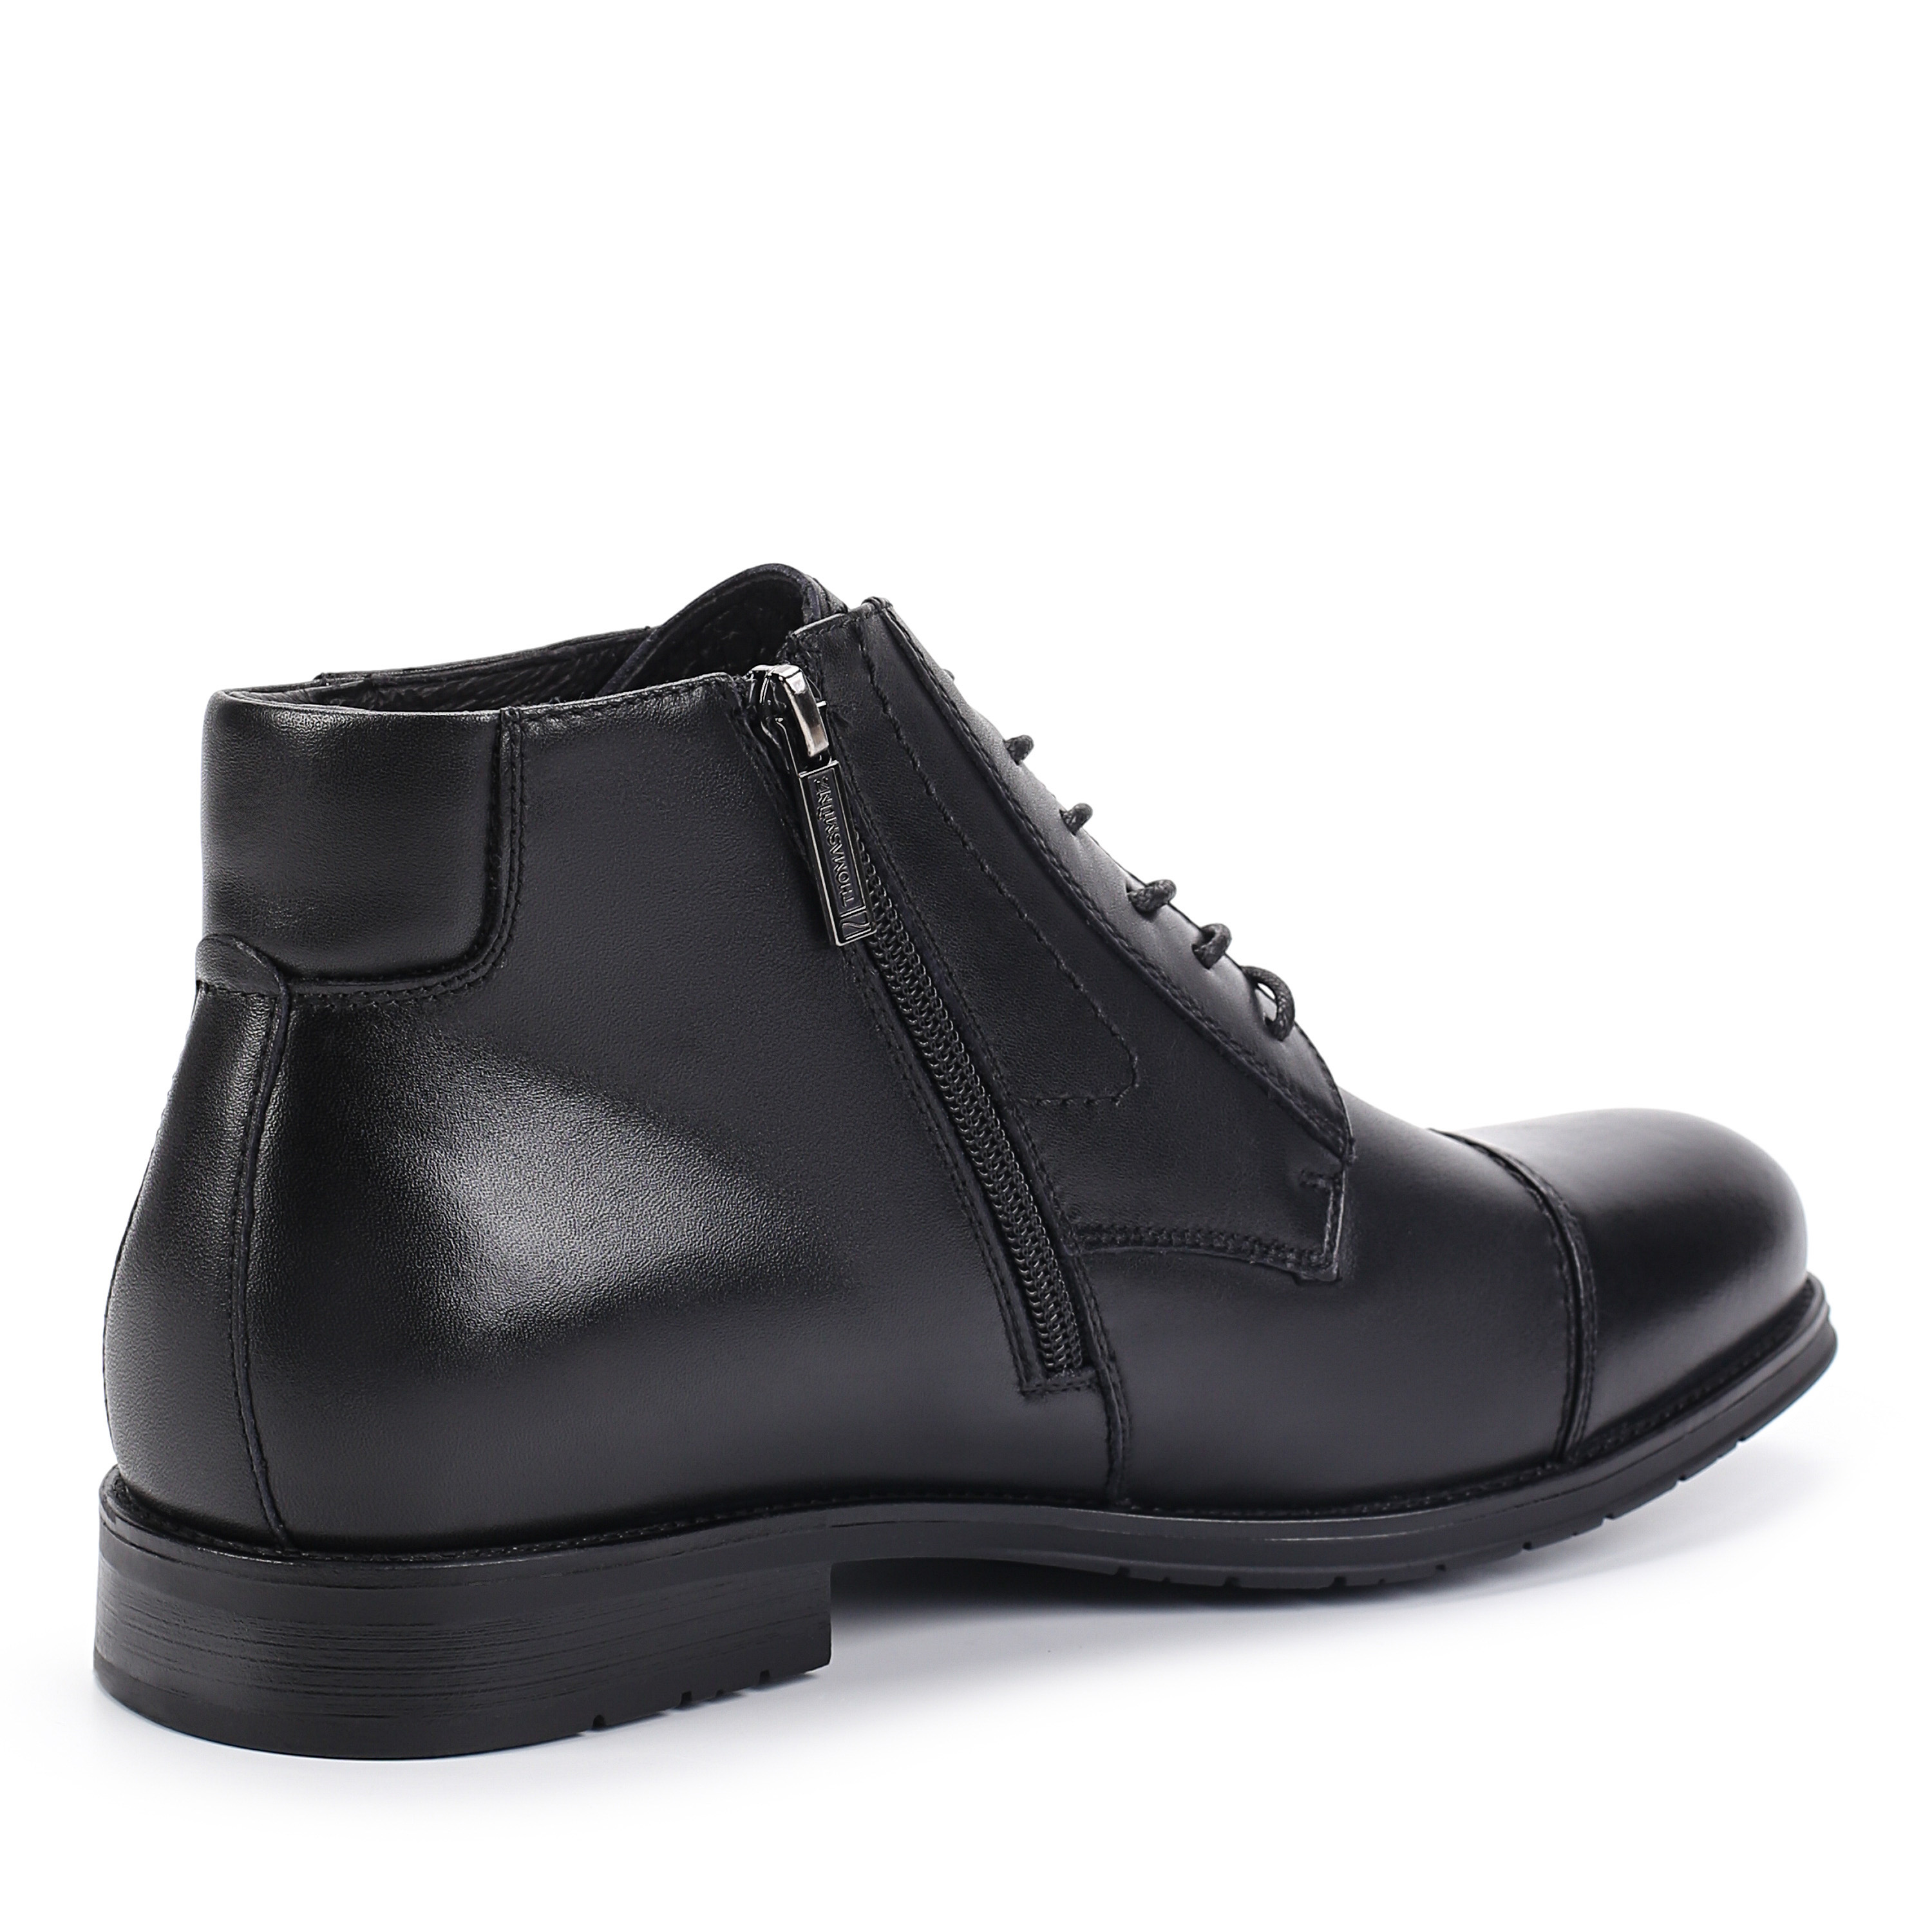 Ботинки Thomas Munz 104-140A-2102 104-140A-2102, цвет черный, размер 45 дерби - фото 3